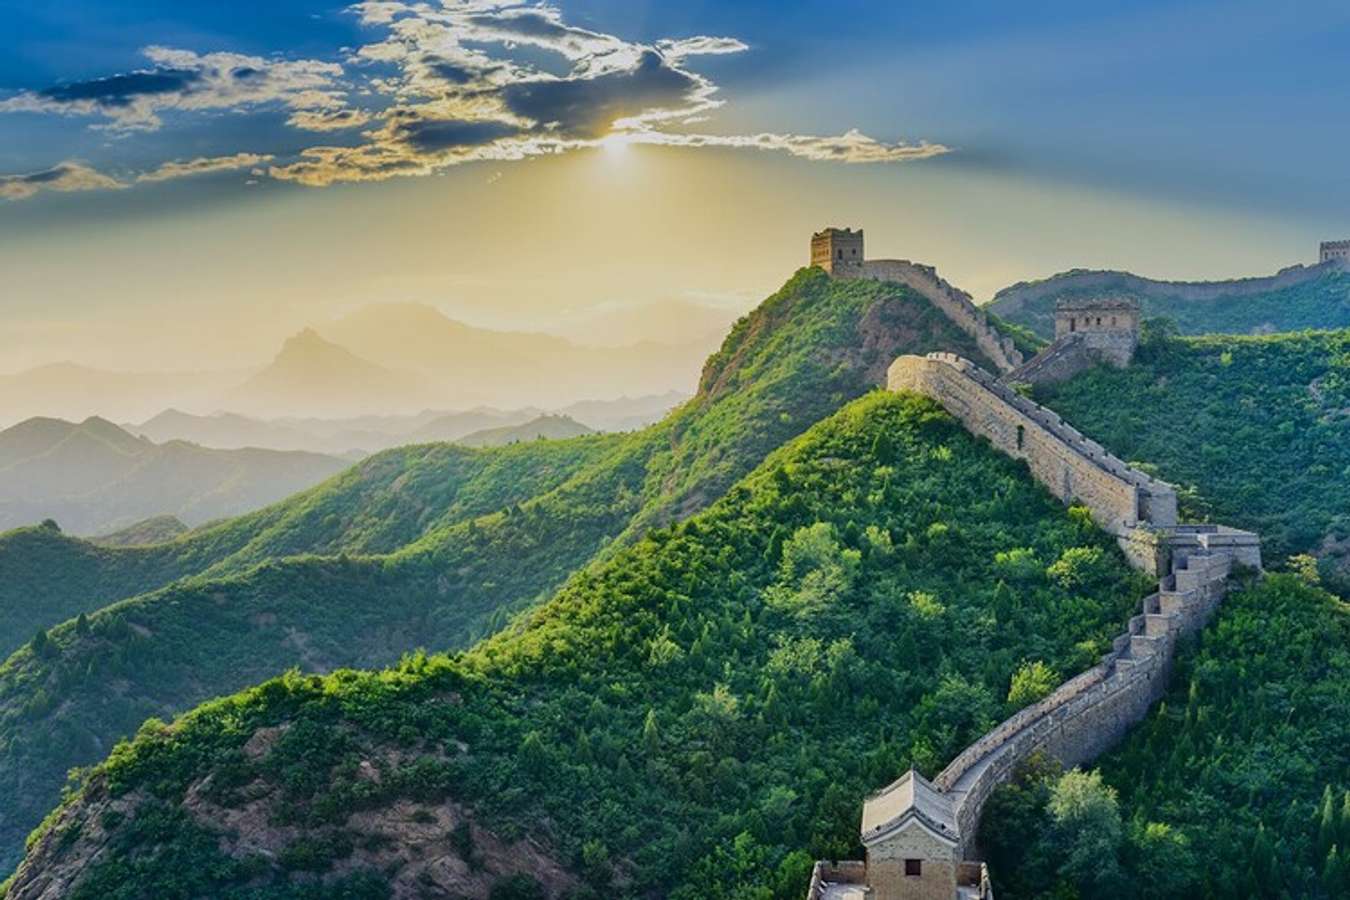 Trung Quốc: Chỉ cần nhắc đến Trung Quốc, bạn đã nghĩ đến những món ăn ngon, cảnh quan đẹp và văn hóa đa dạng. Hãy nhìn vào hình ảnh và cảm nhận sự kỳ vĩ của Trung Quốc. Bức ảnh sẽ đưa bạn vào một chuyến phiêu lưu bất tận tìm hiểu nét đẹp độc đáo của nước này.